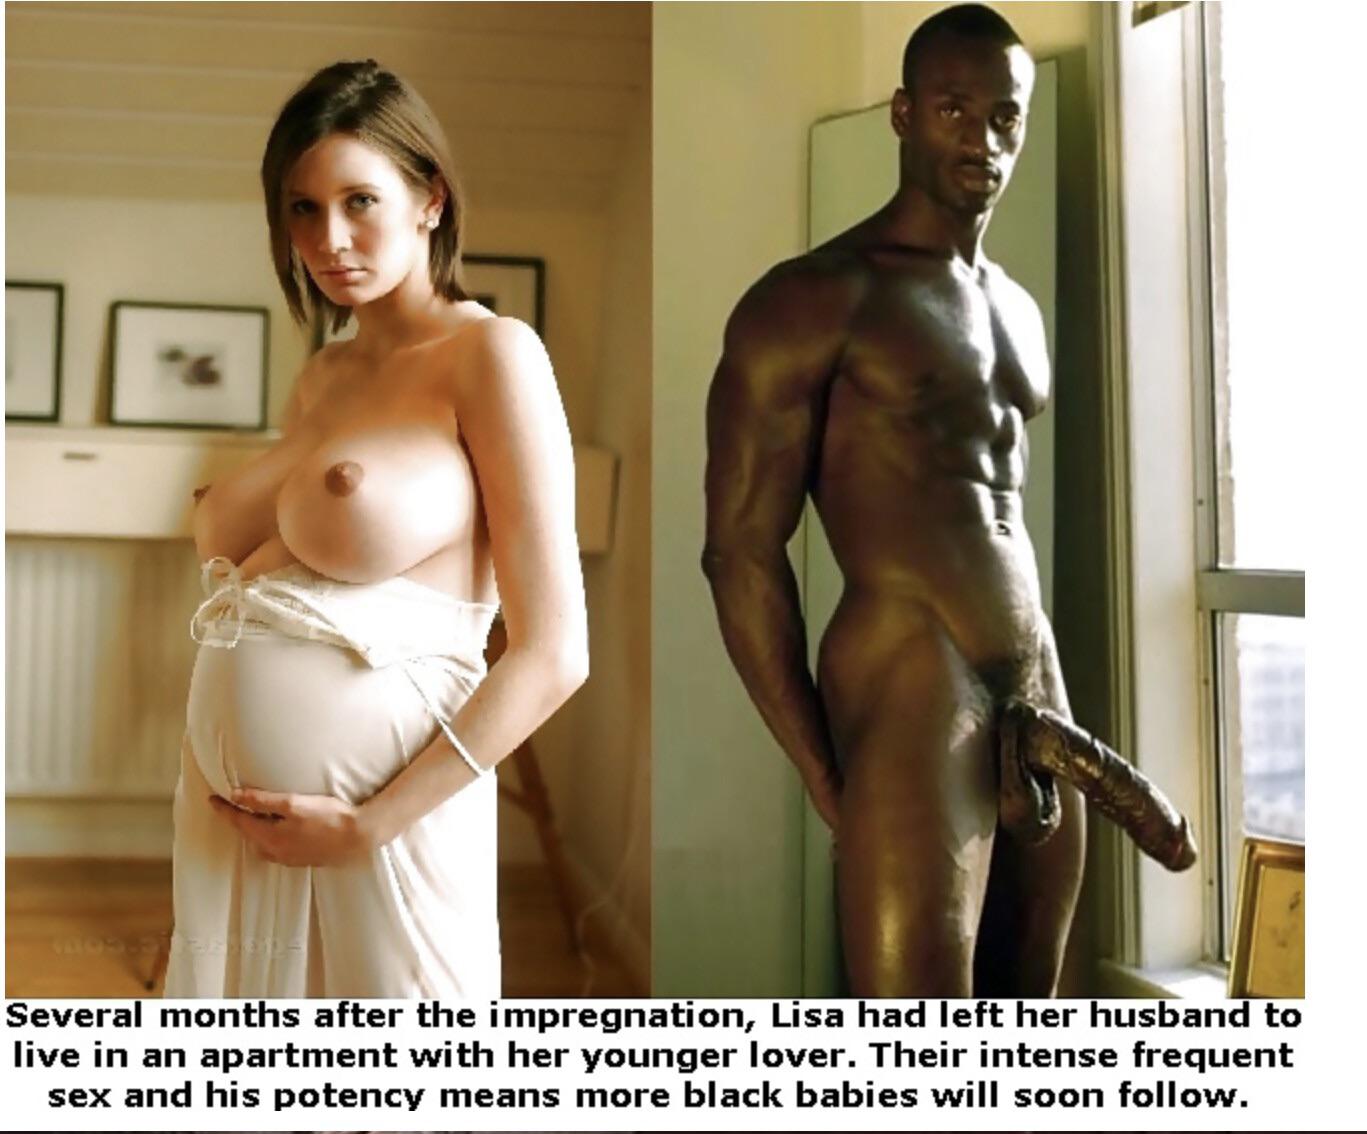 Interracial cuckold pregnancy